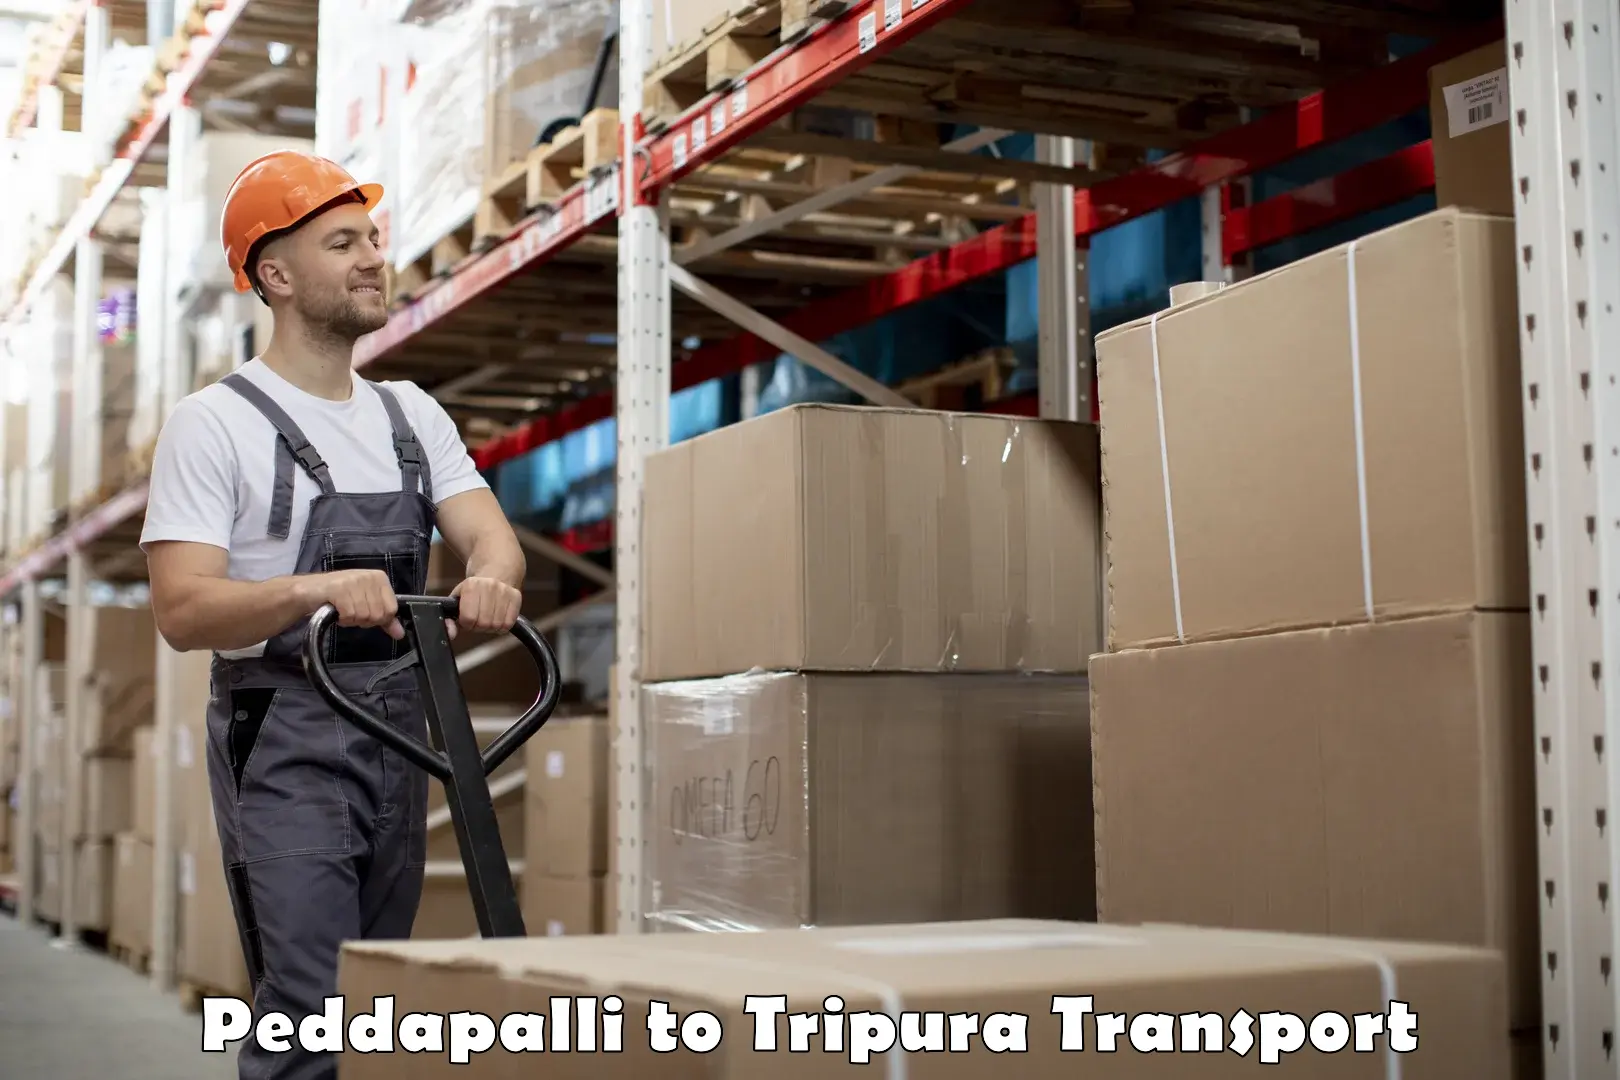 Delivery service Peddapalli to Udaipur Tripura